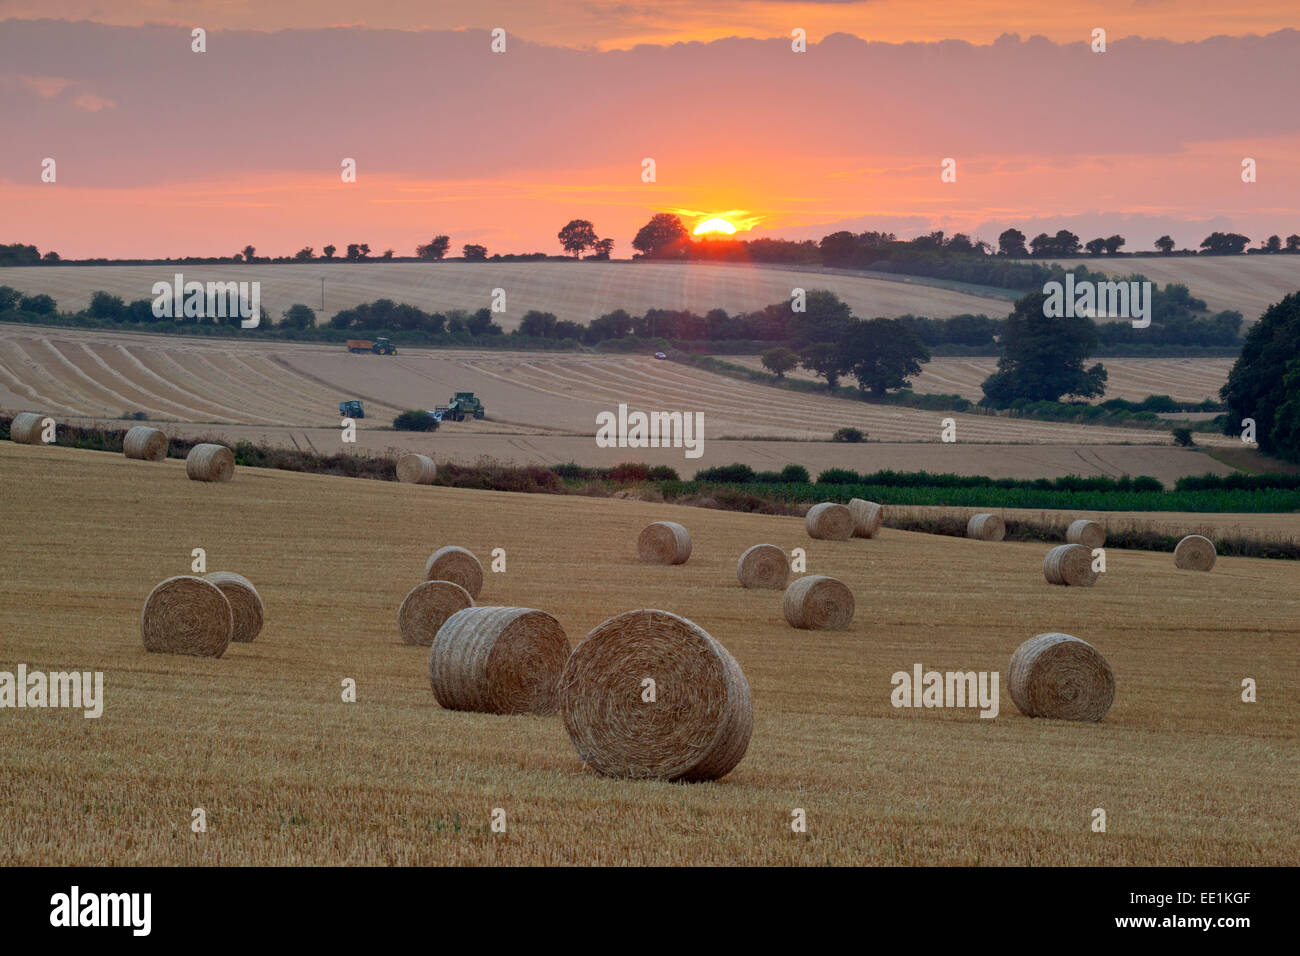 Balles de foin rondes à la récolte avec le coucher du soleil, Swinbrook, Cotswolds, Oxfordshire, Angleterre, Royaume-Uni, Europe Banque D'Images